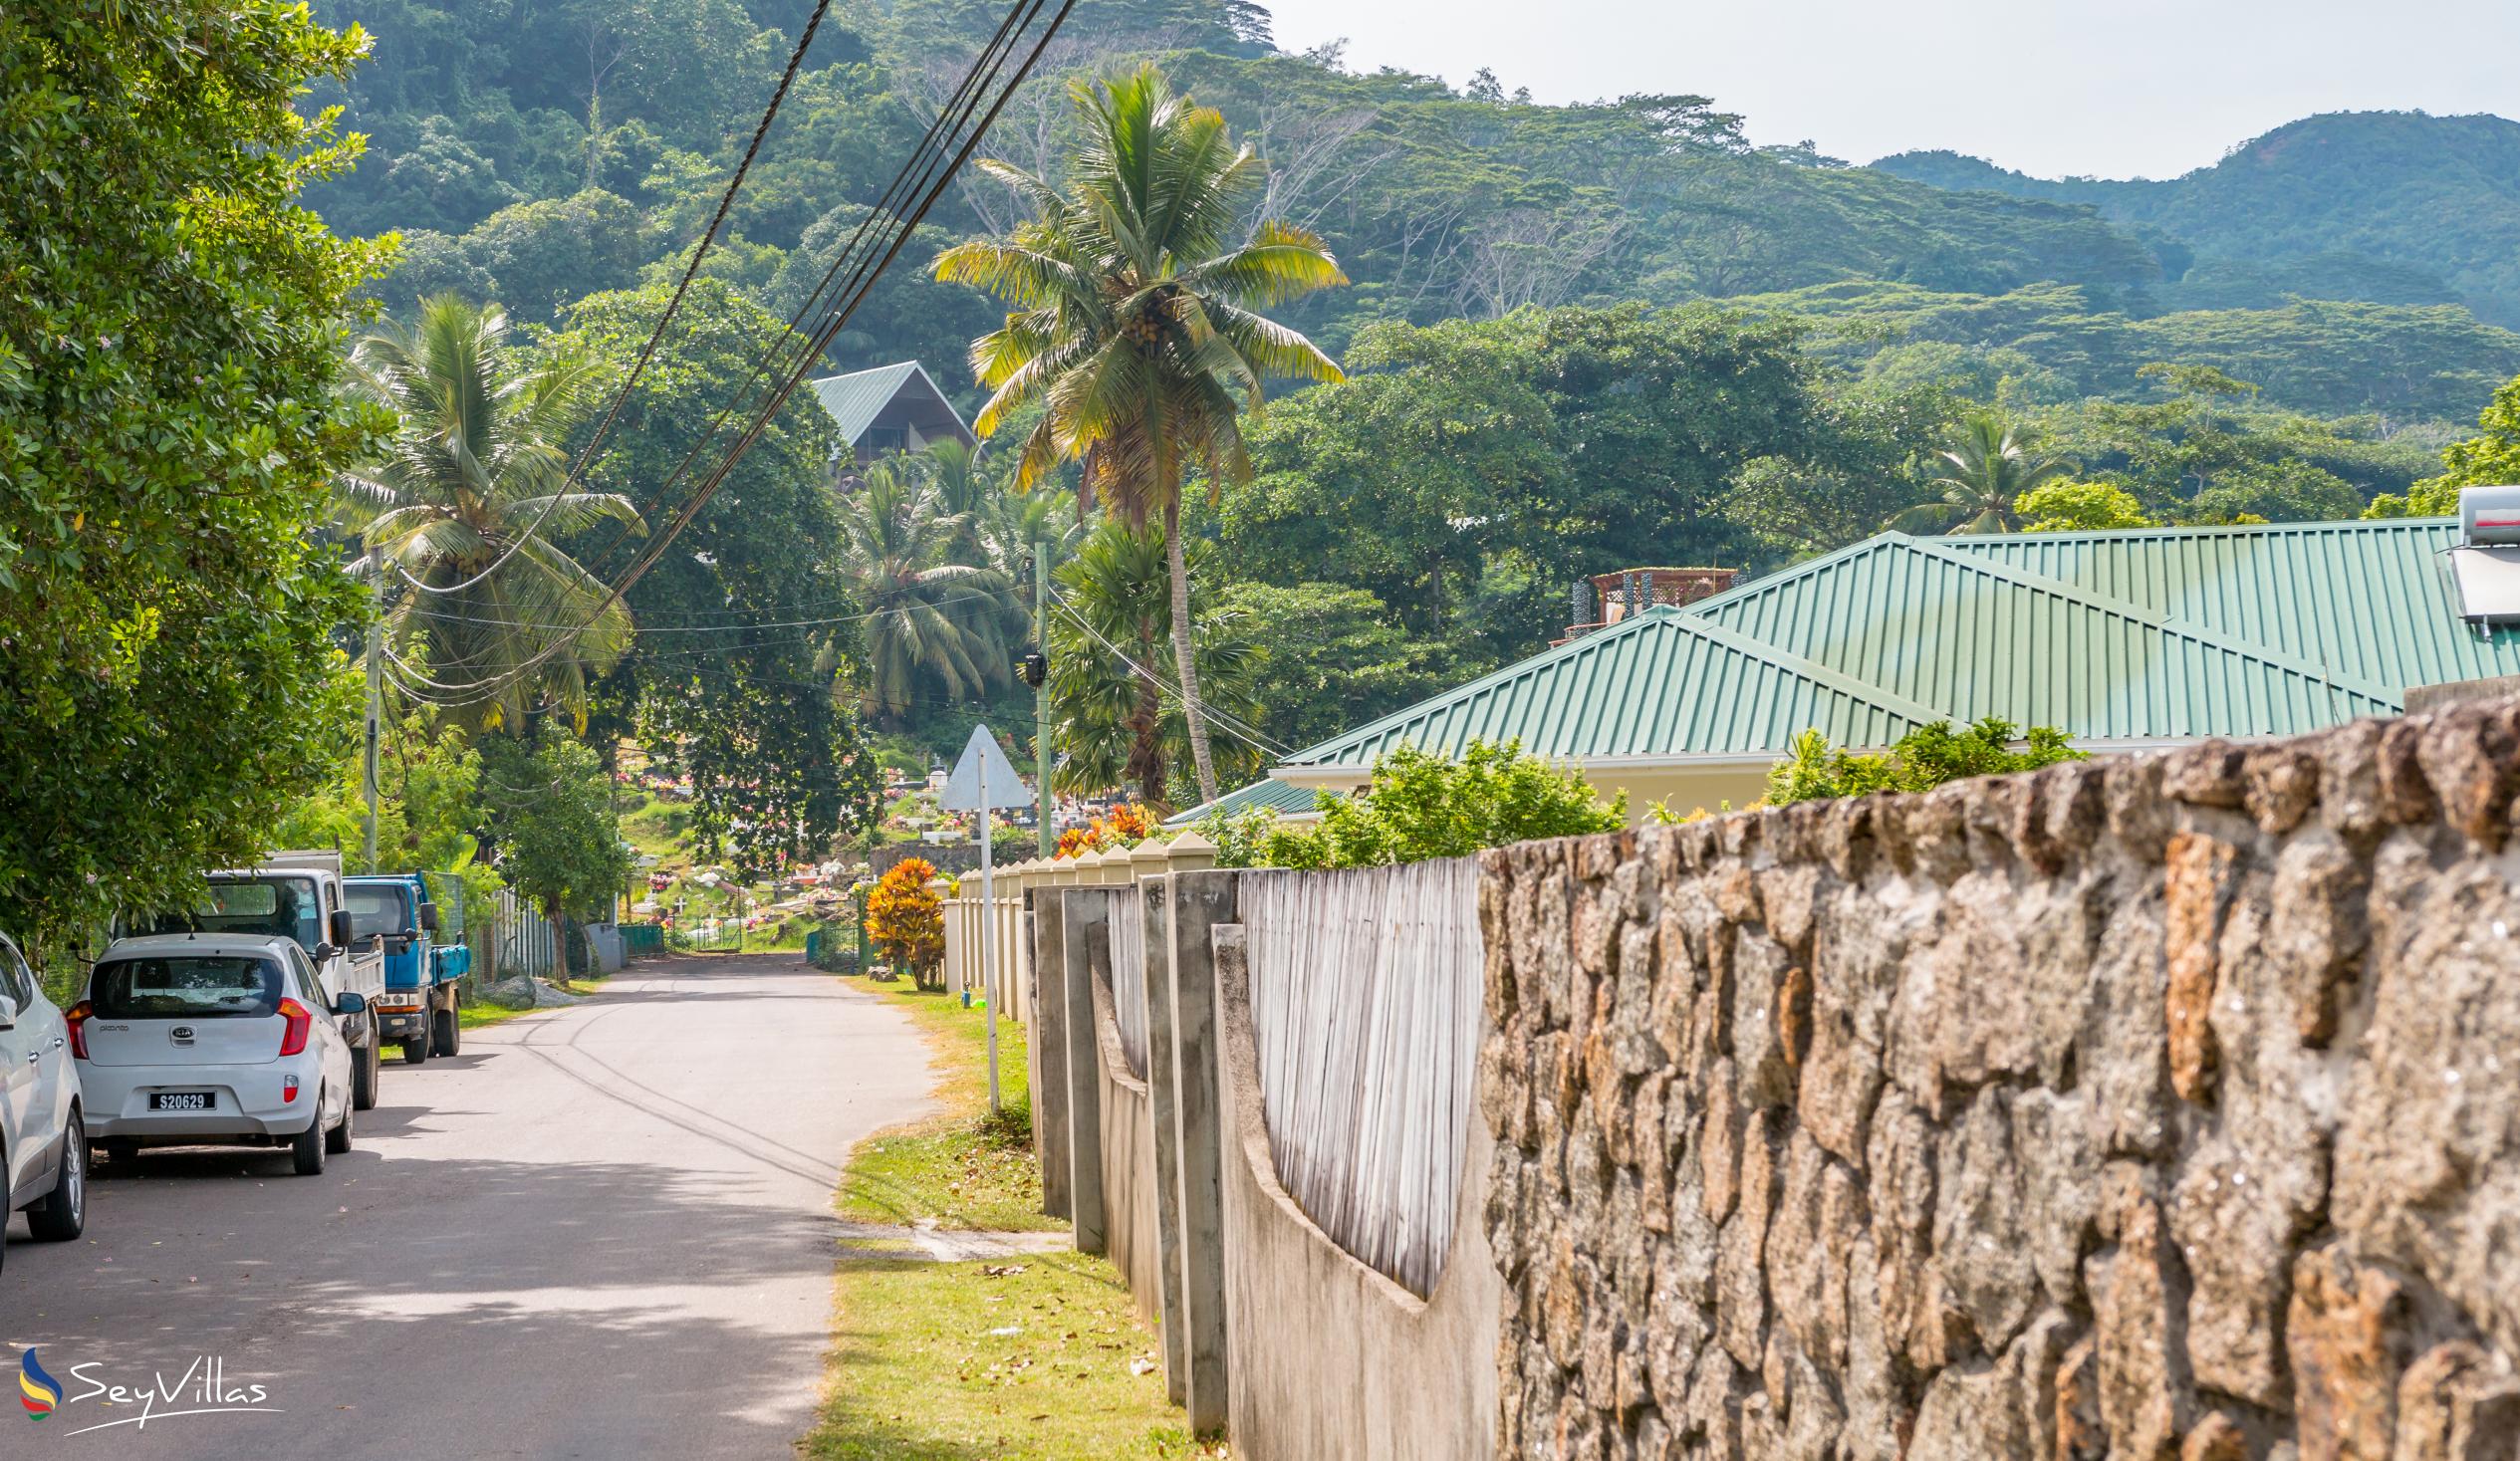 Photo 19: Coco Blanche (Maison Coco) - Location - Mahé (Seychelles)